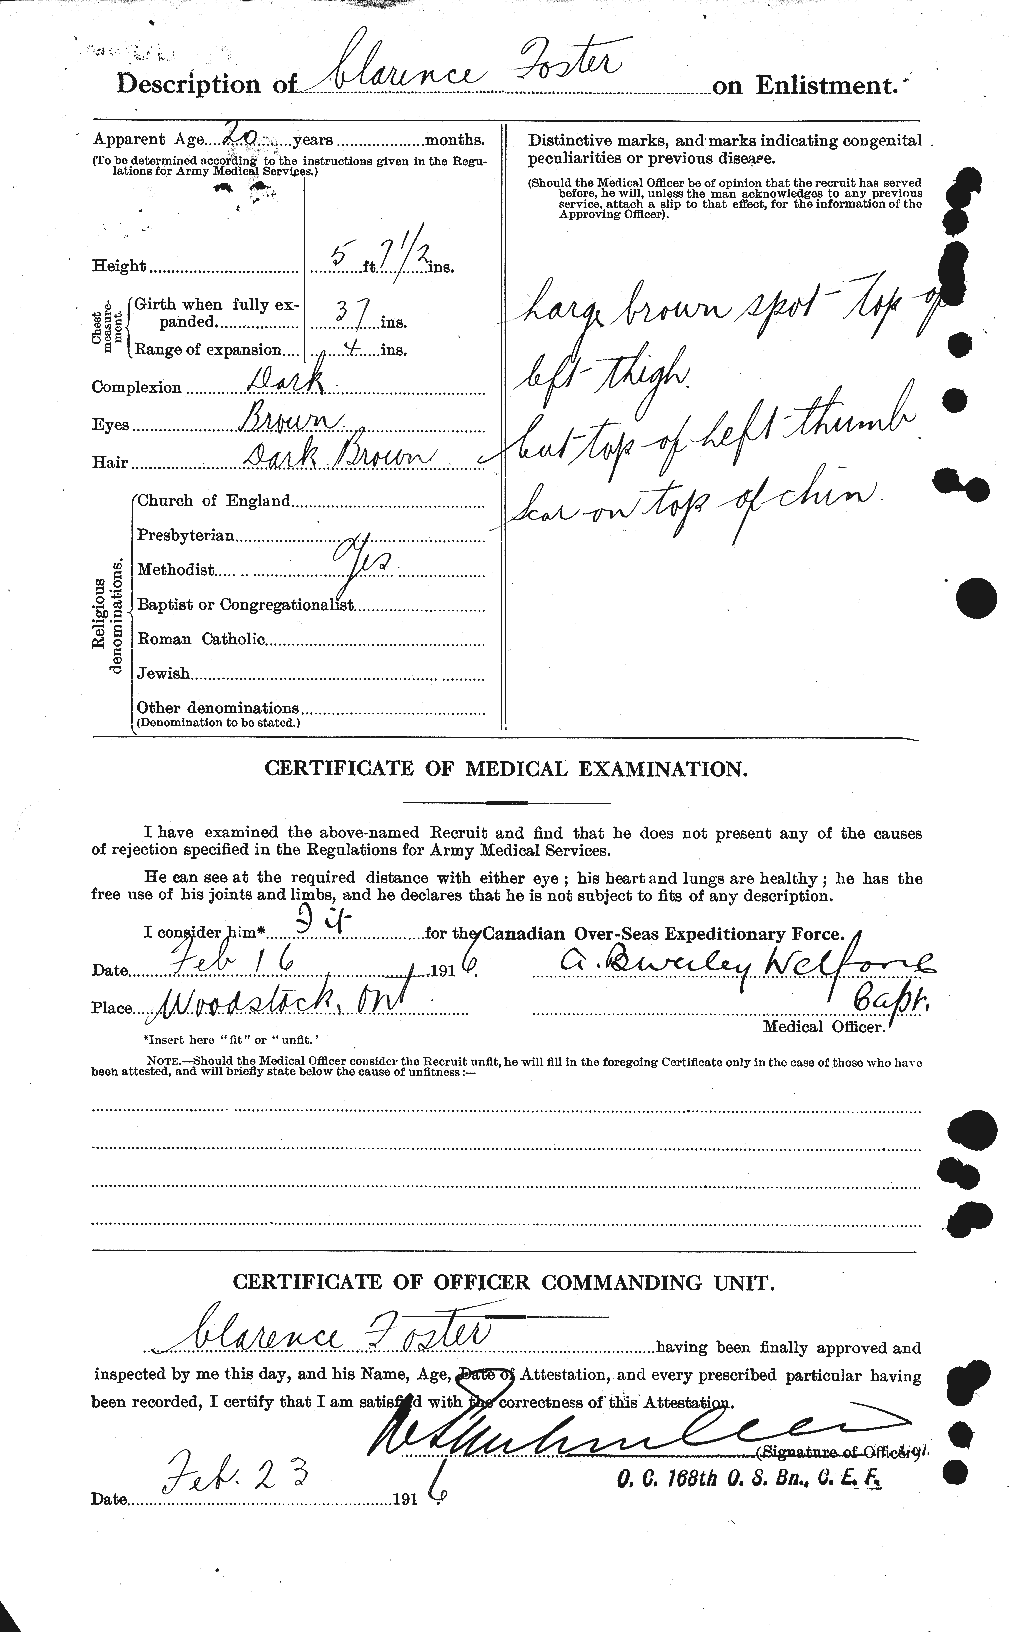 Dossiers du Personnel de la Première Guerre mondiale - CEC 330533b